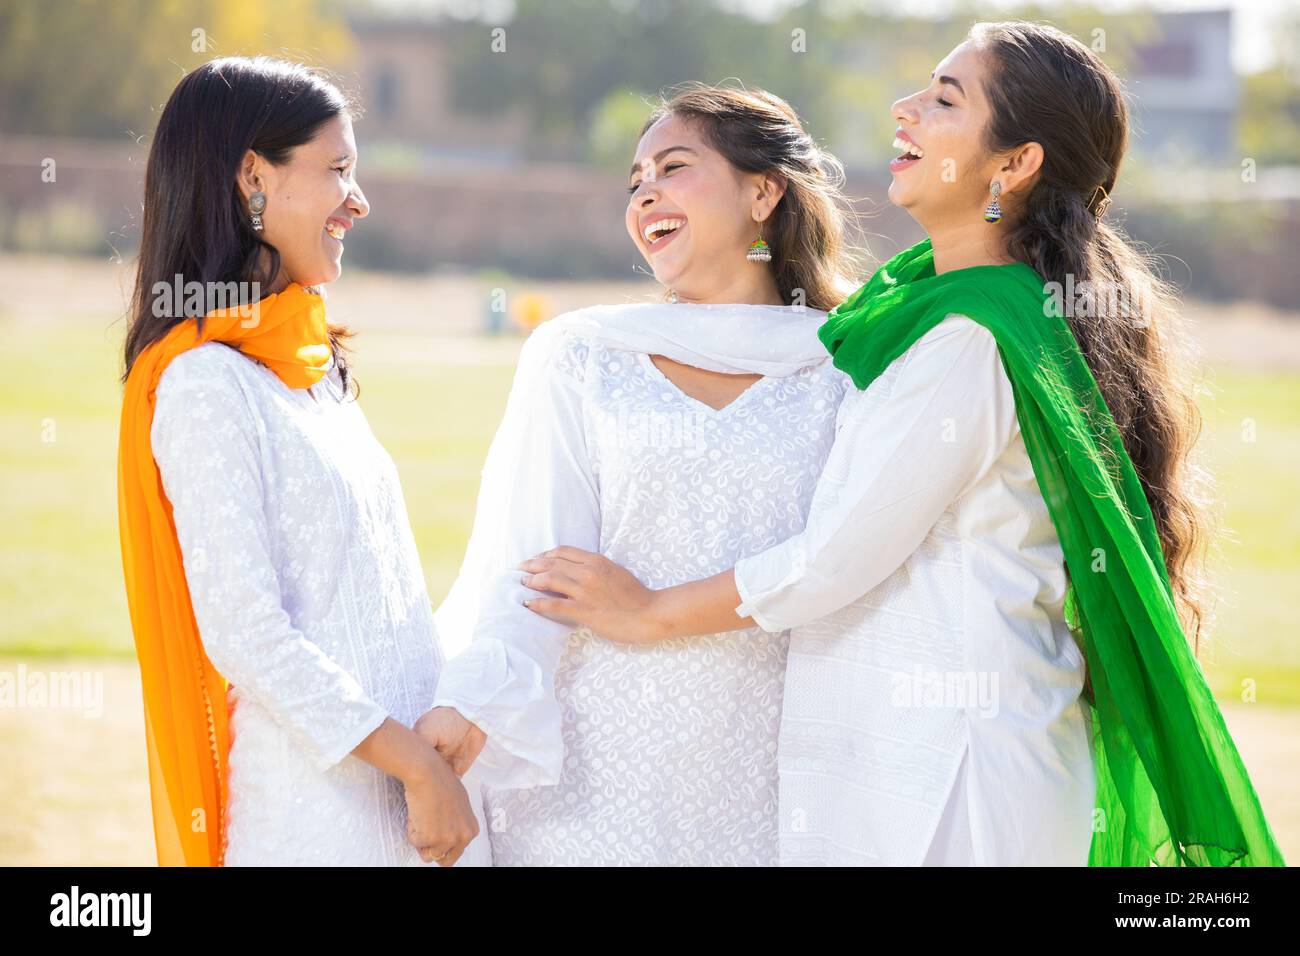 Indischer Unabhängigkeitstag oder republikanisches Tageskonzept. Drei glückliche junge, schöne Frau in traditionellem weißen Kleid, die im Park lacht. Stockfoto